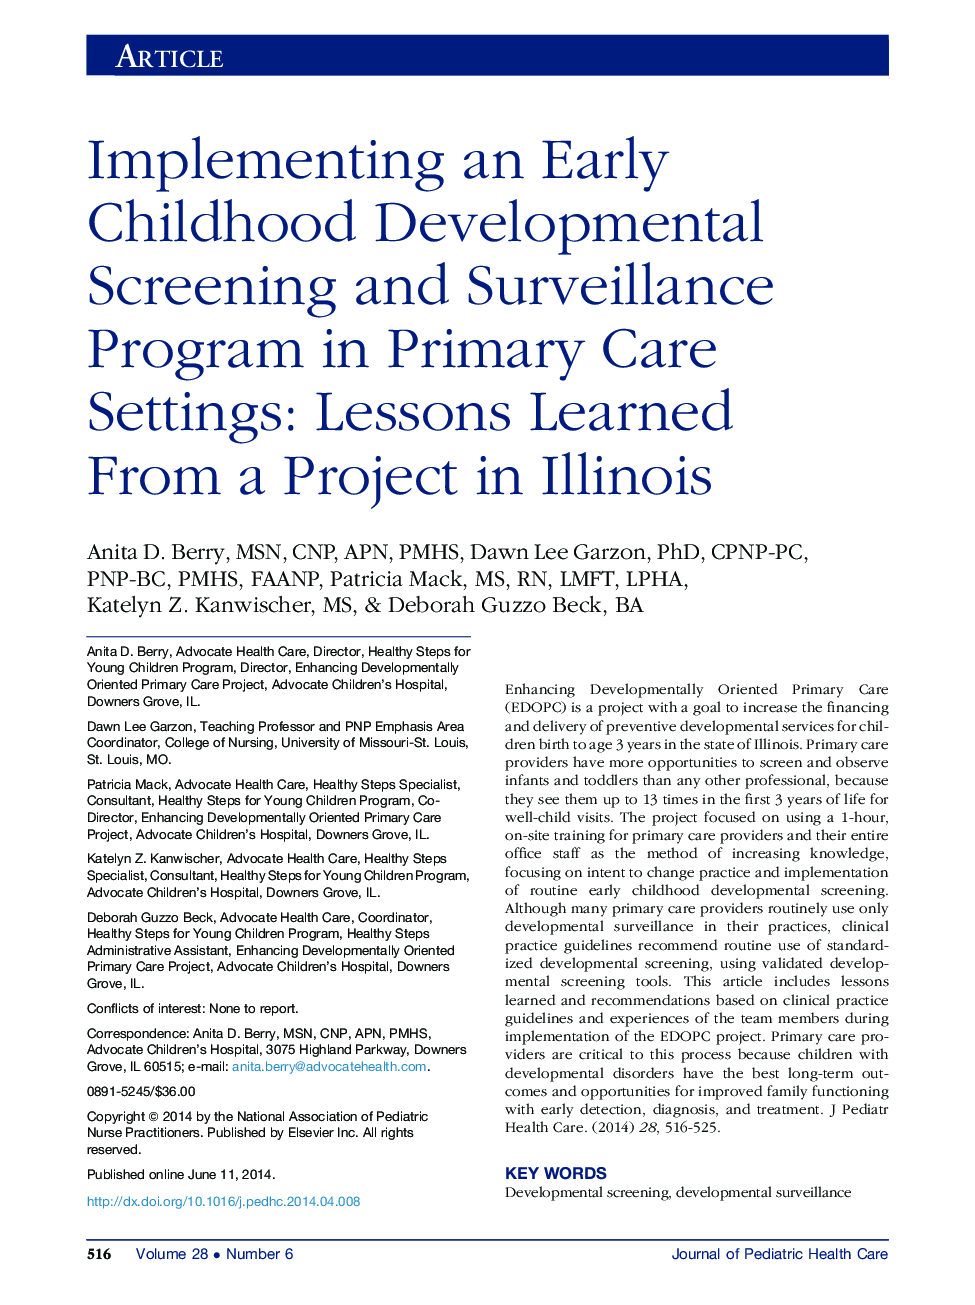 پیاده سازی برنامه غربالگری و برنامه ریزی توسعه دوران کودکی در تنظیمات اولیه مراقبت اولیه: درس هایی که از یک پروژه در ایلینوی یاد گرفتید 